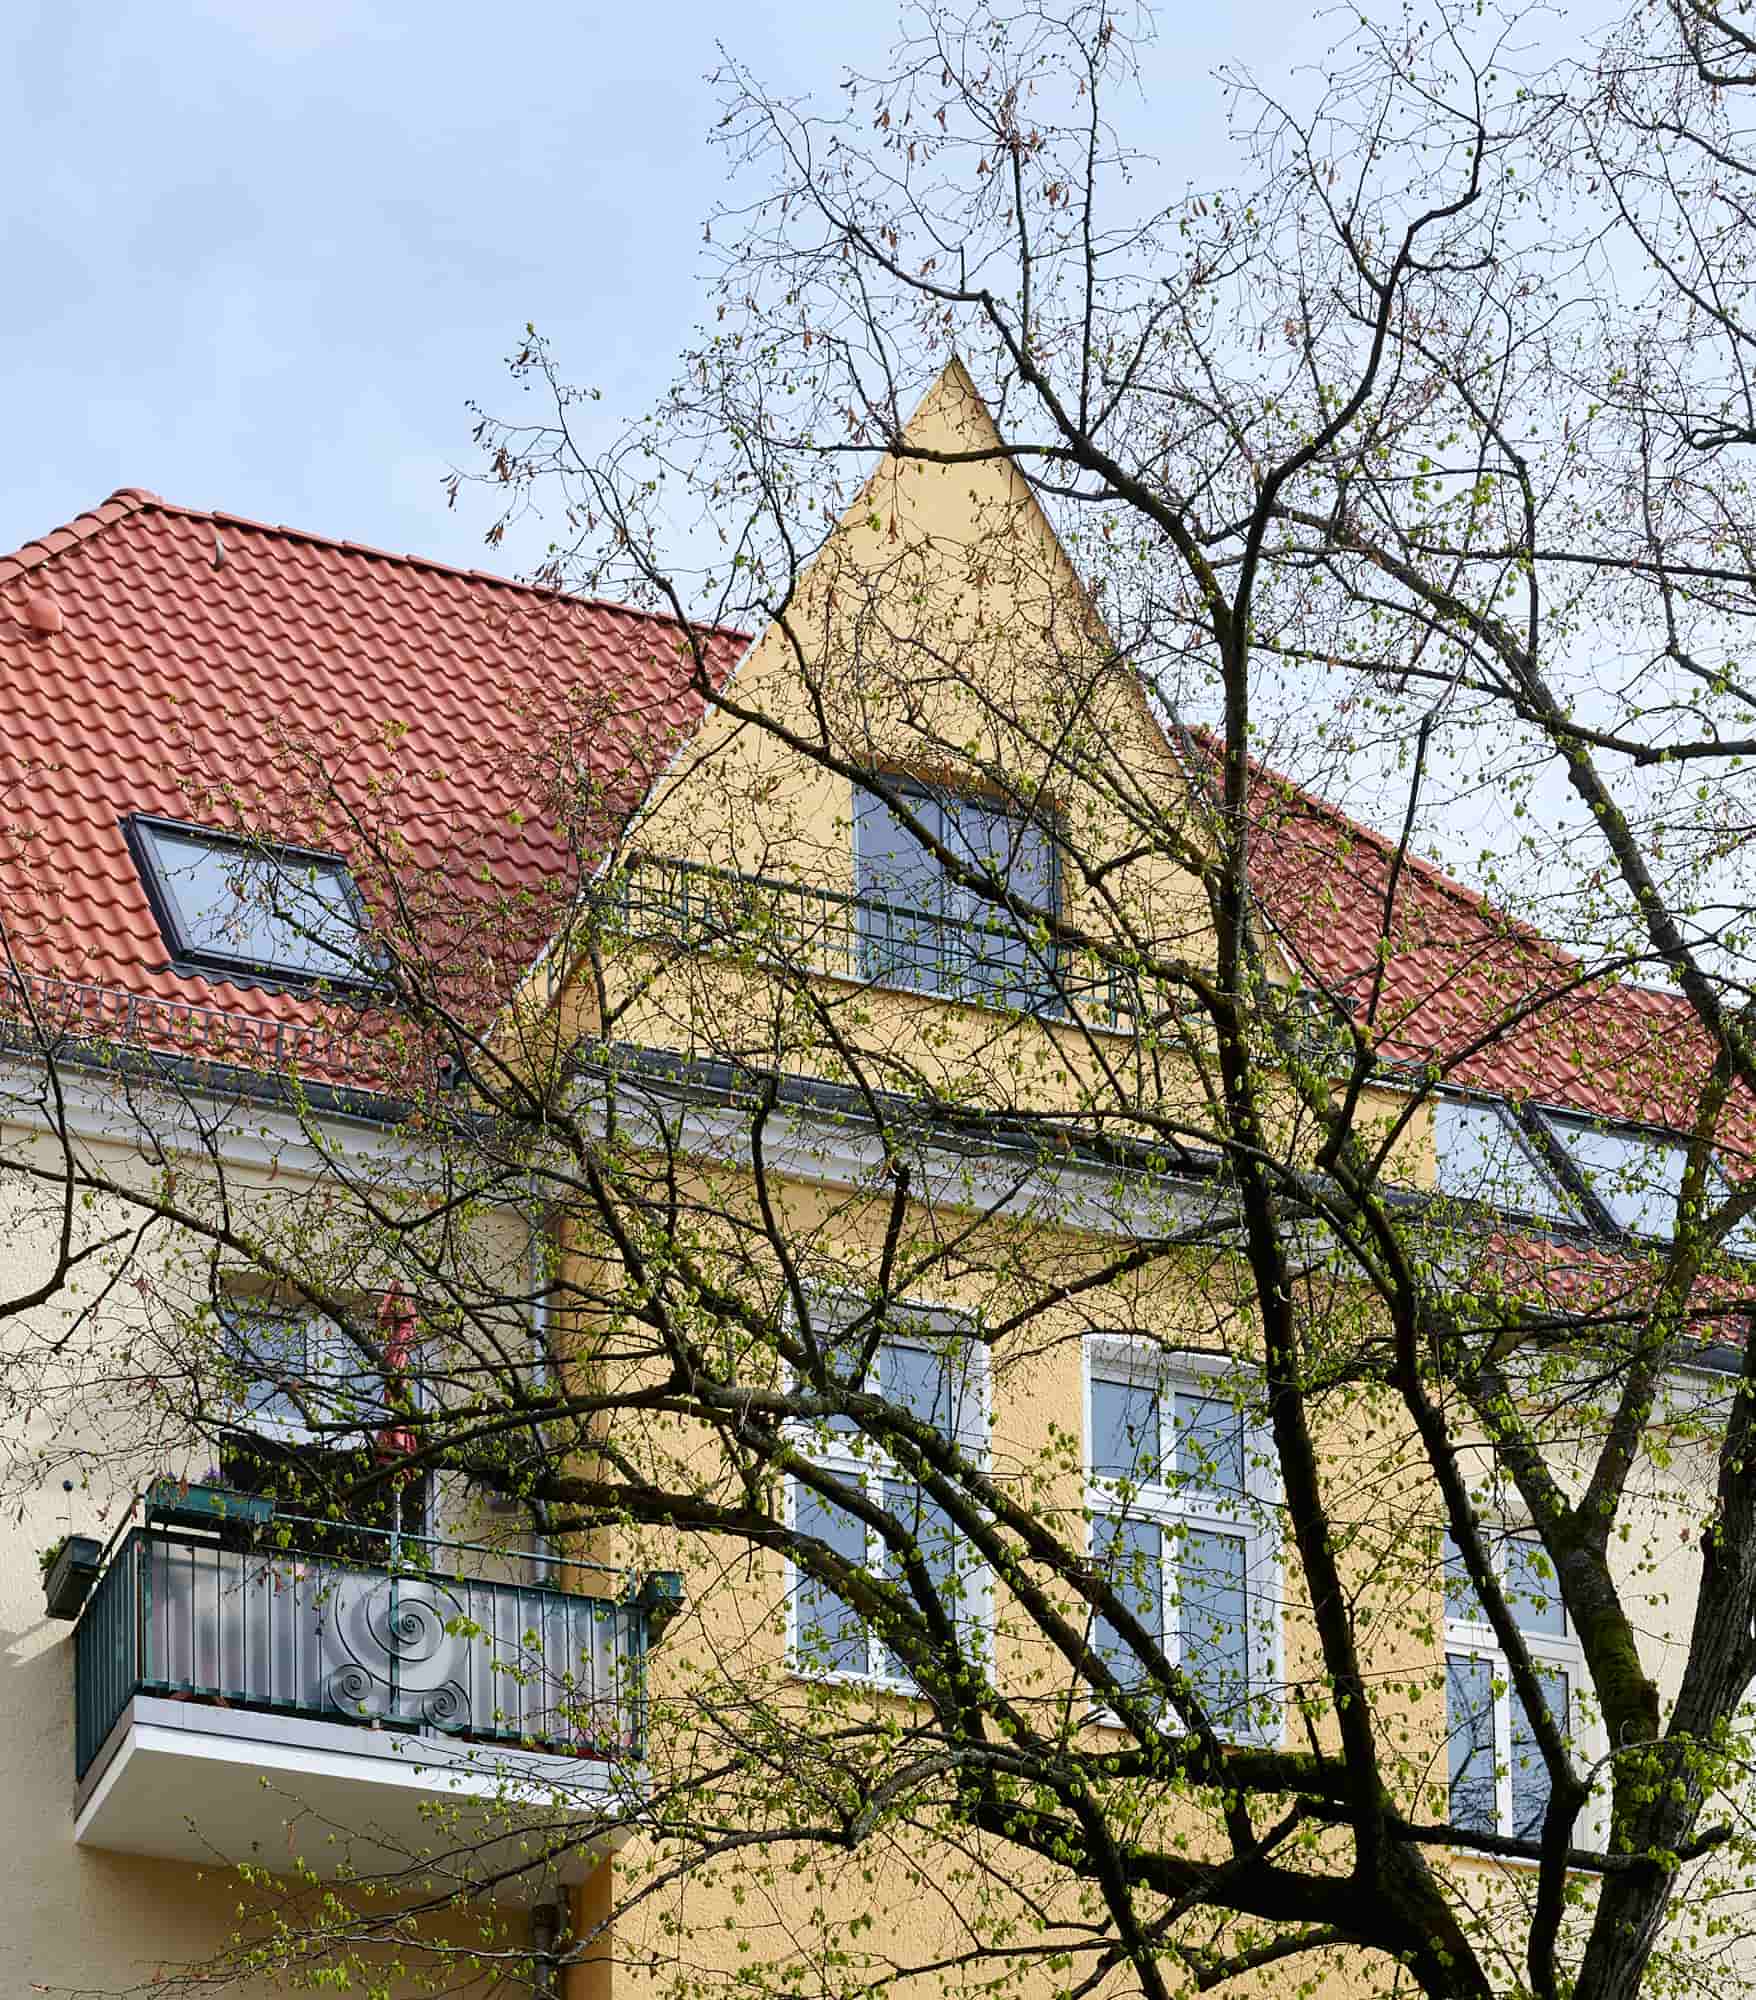 Gabriele Riesner, Architektin, Berlin, Dachgeschossausbau eines Mietshauses in Berlin-Steglitz, Straßenfassade